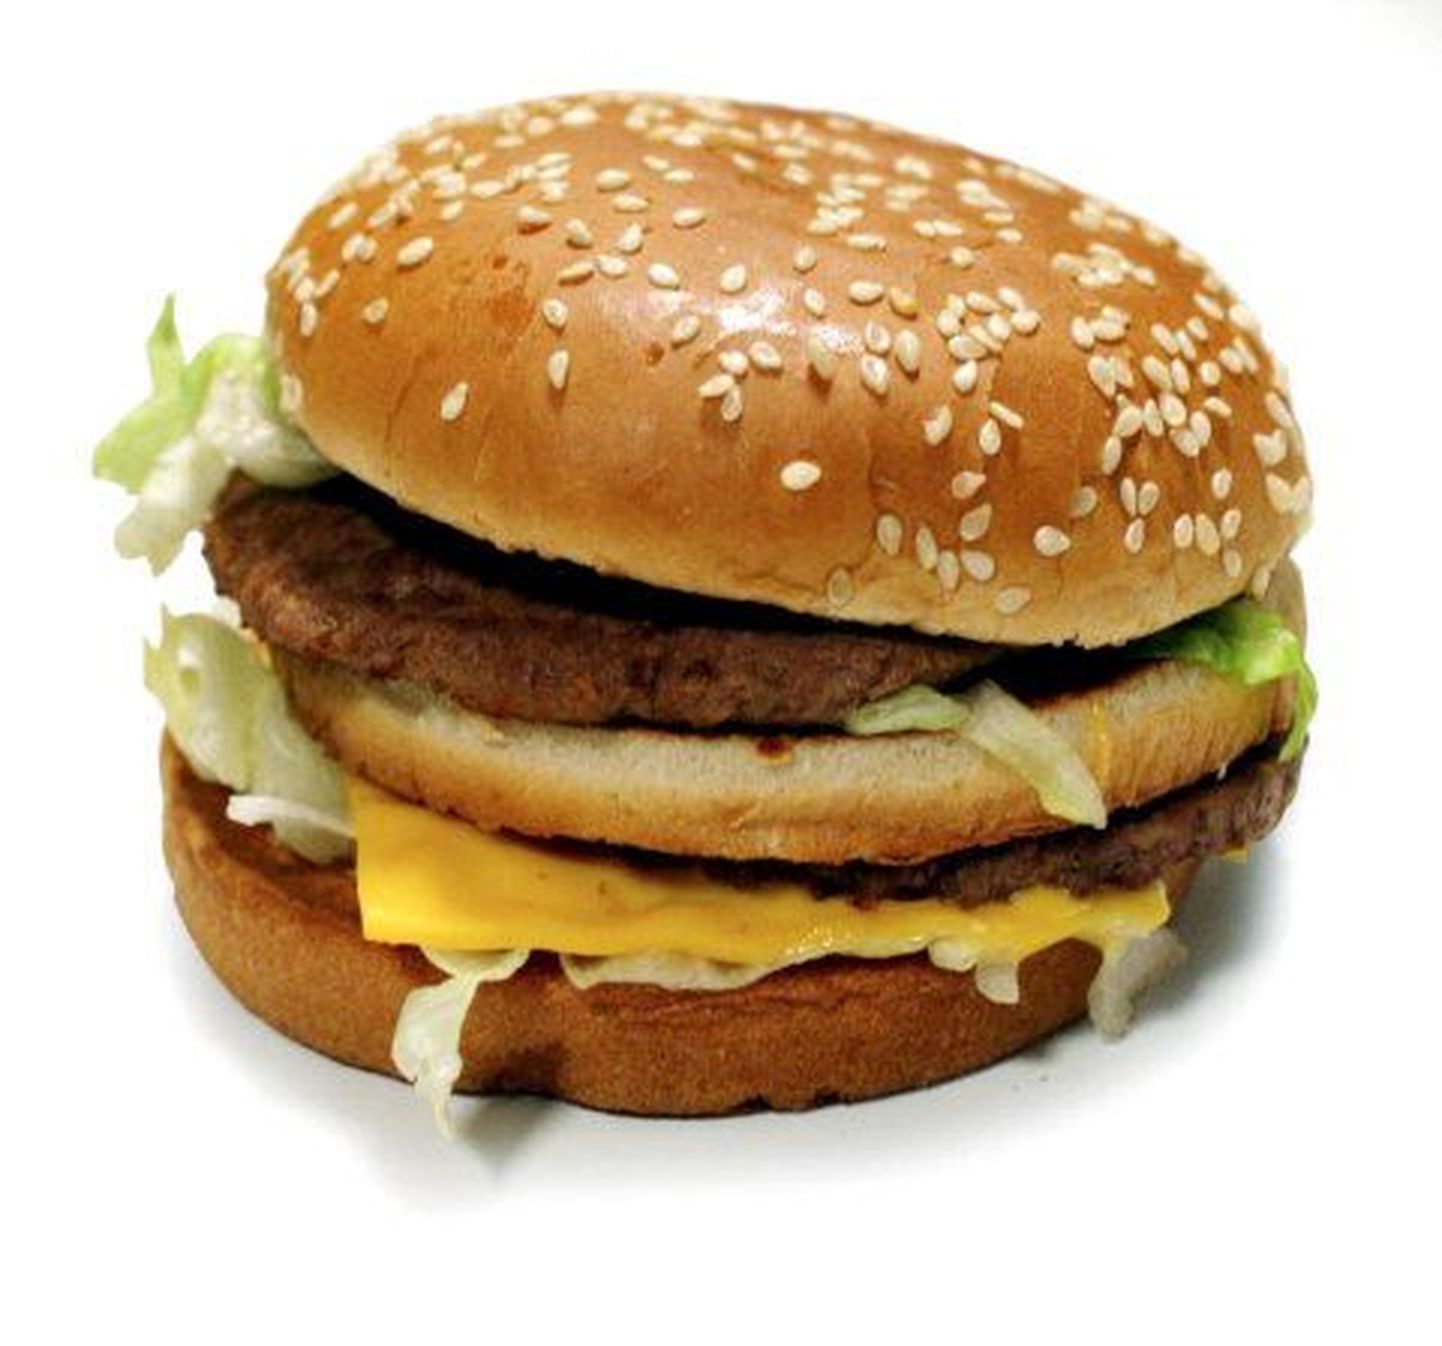 Kalorite mõõtmiseks tuli burger purustada ja teatud ainetega segada.